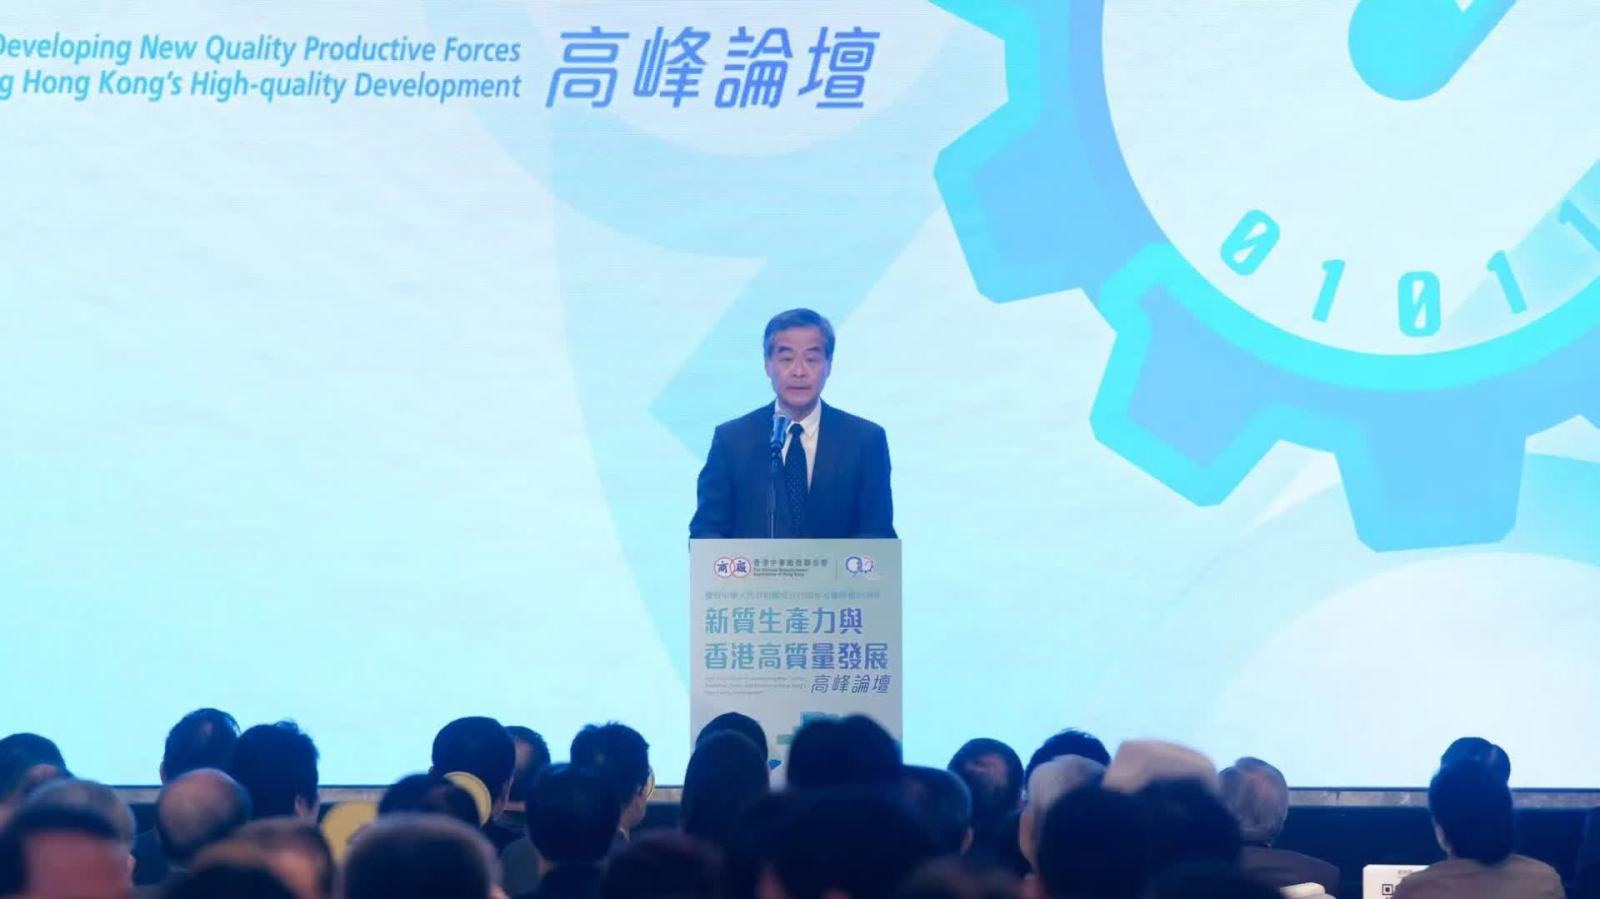 梁振英：香港可發揮獨特優勢助力國家推進新質生產力